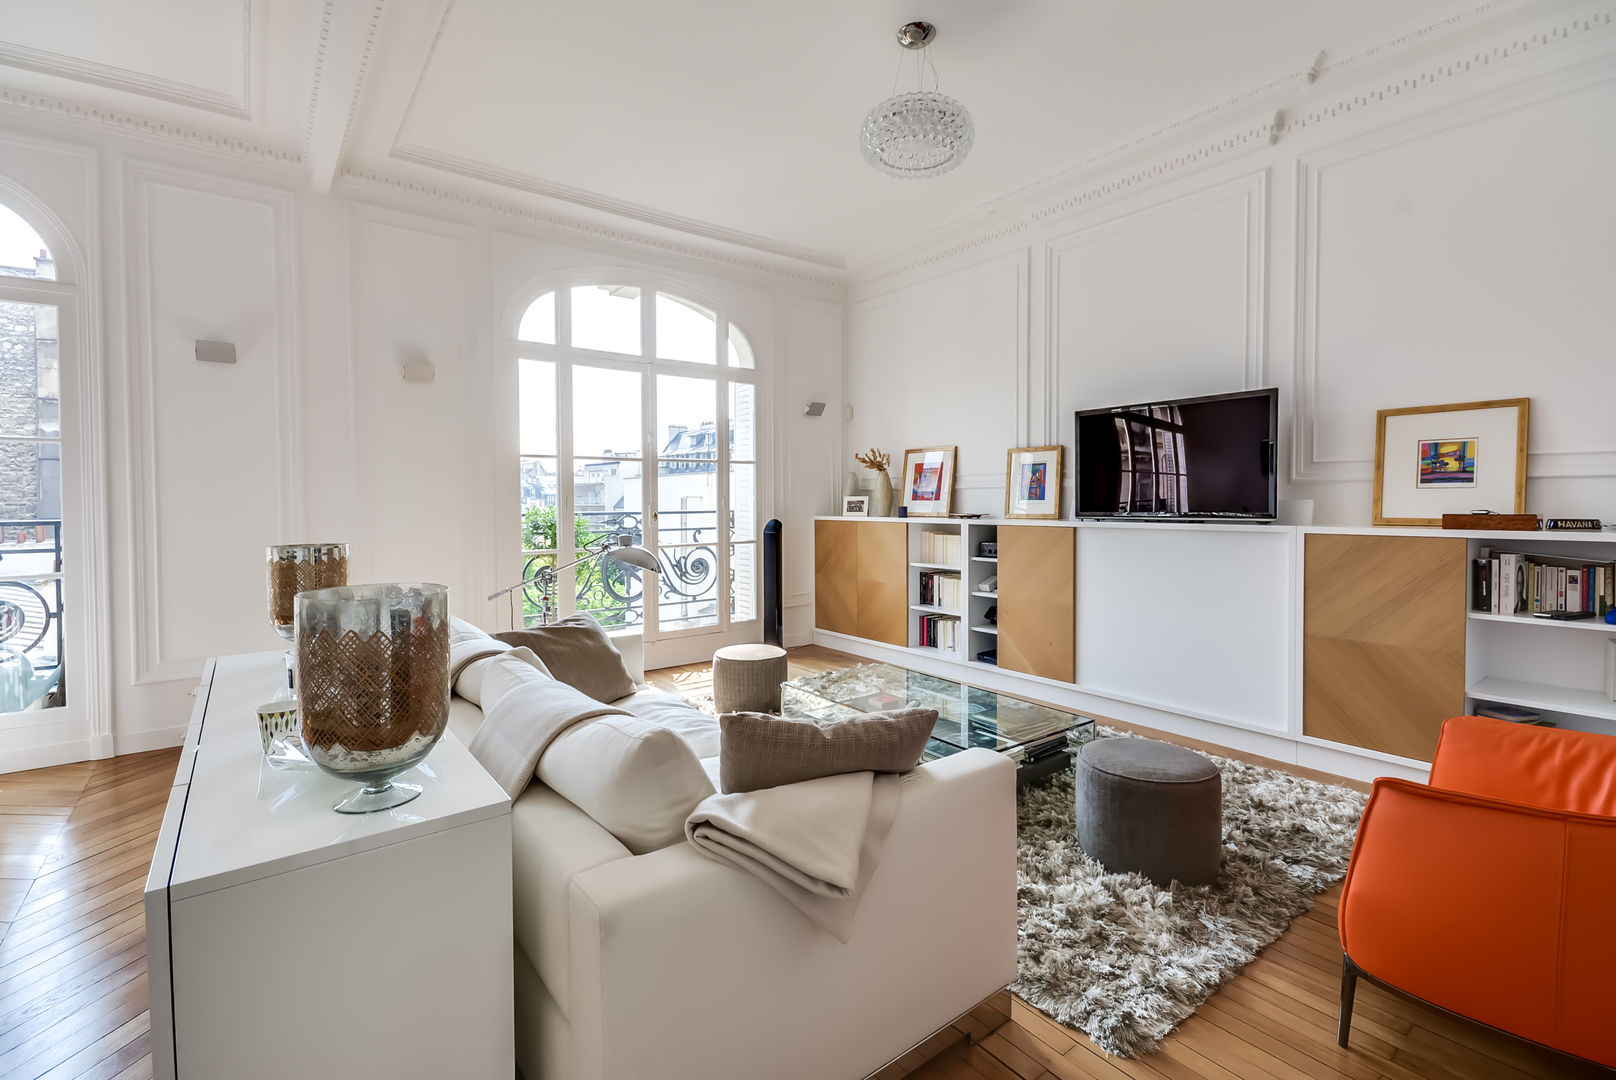 Un appartement haussmanien revisité - Paris 16e, ATELIER FB ATELIER FB Salones modernos